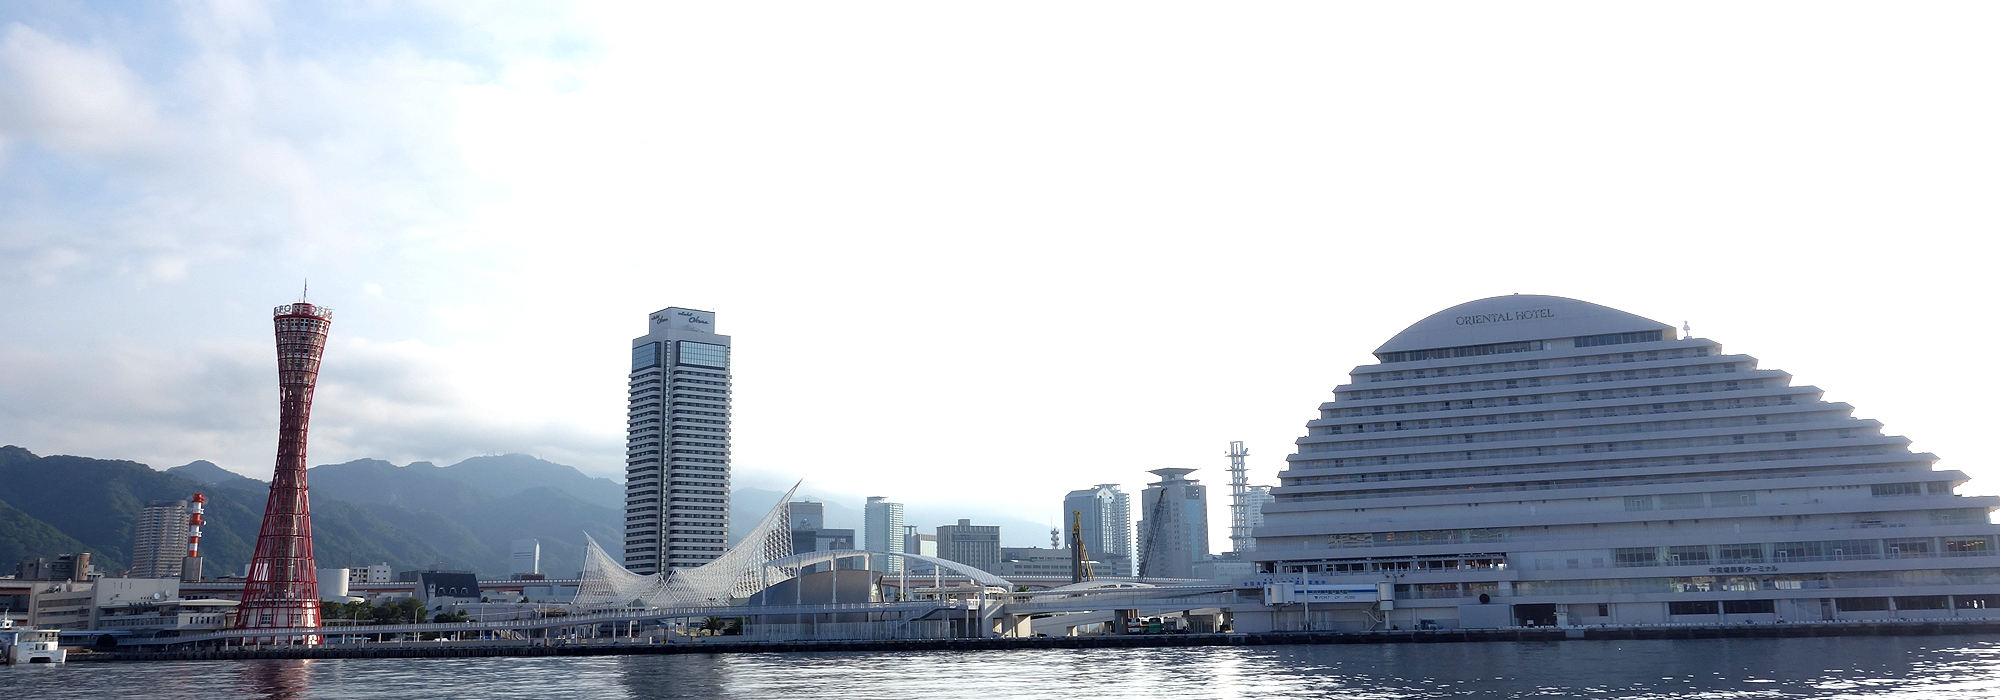 神戸港昼の景色